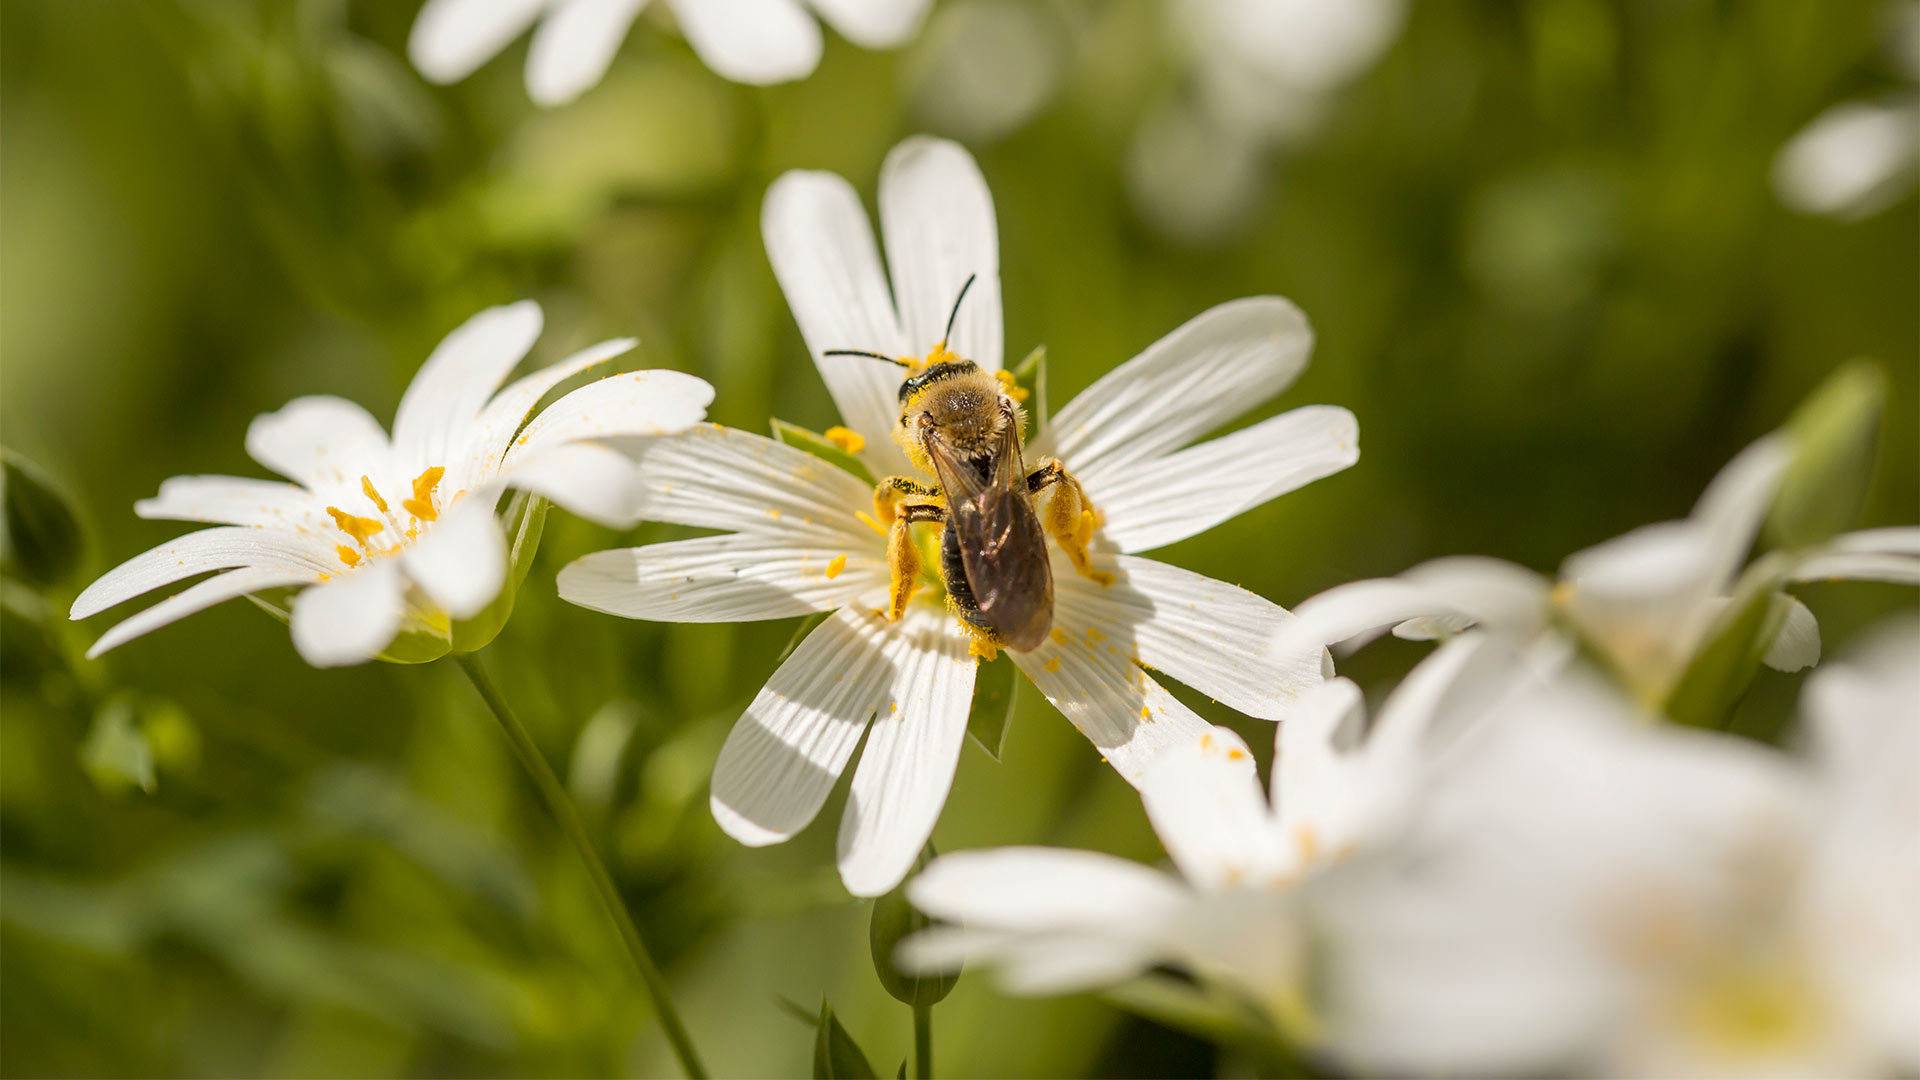 Ciné-débat "Être avec les abeilles" à Mulhouse